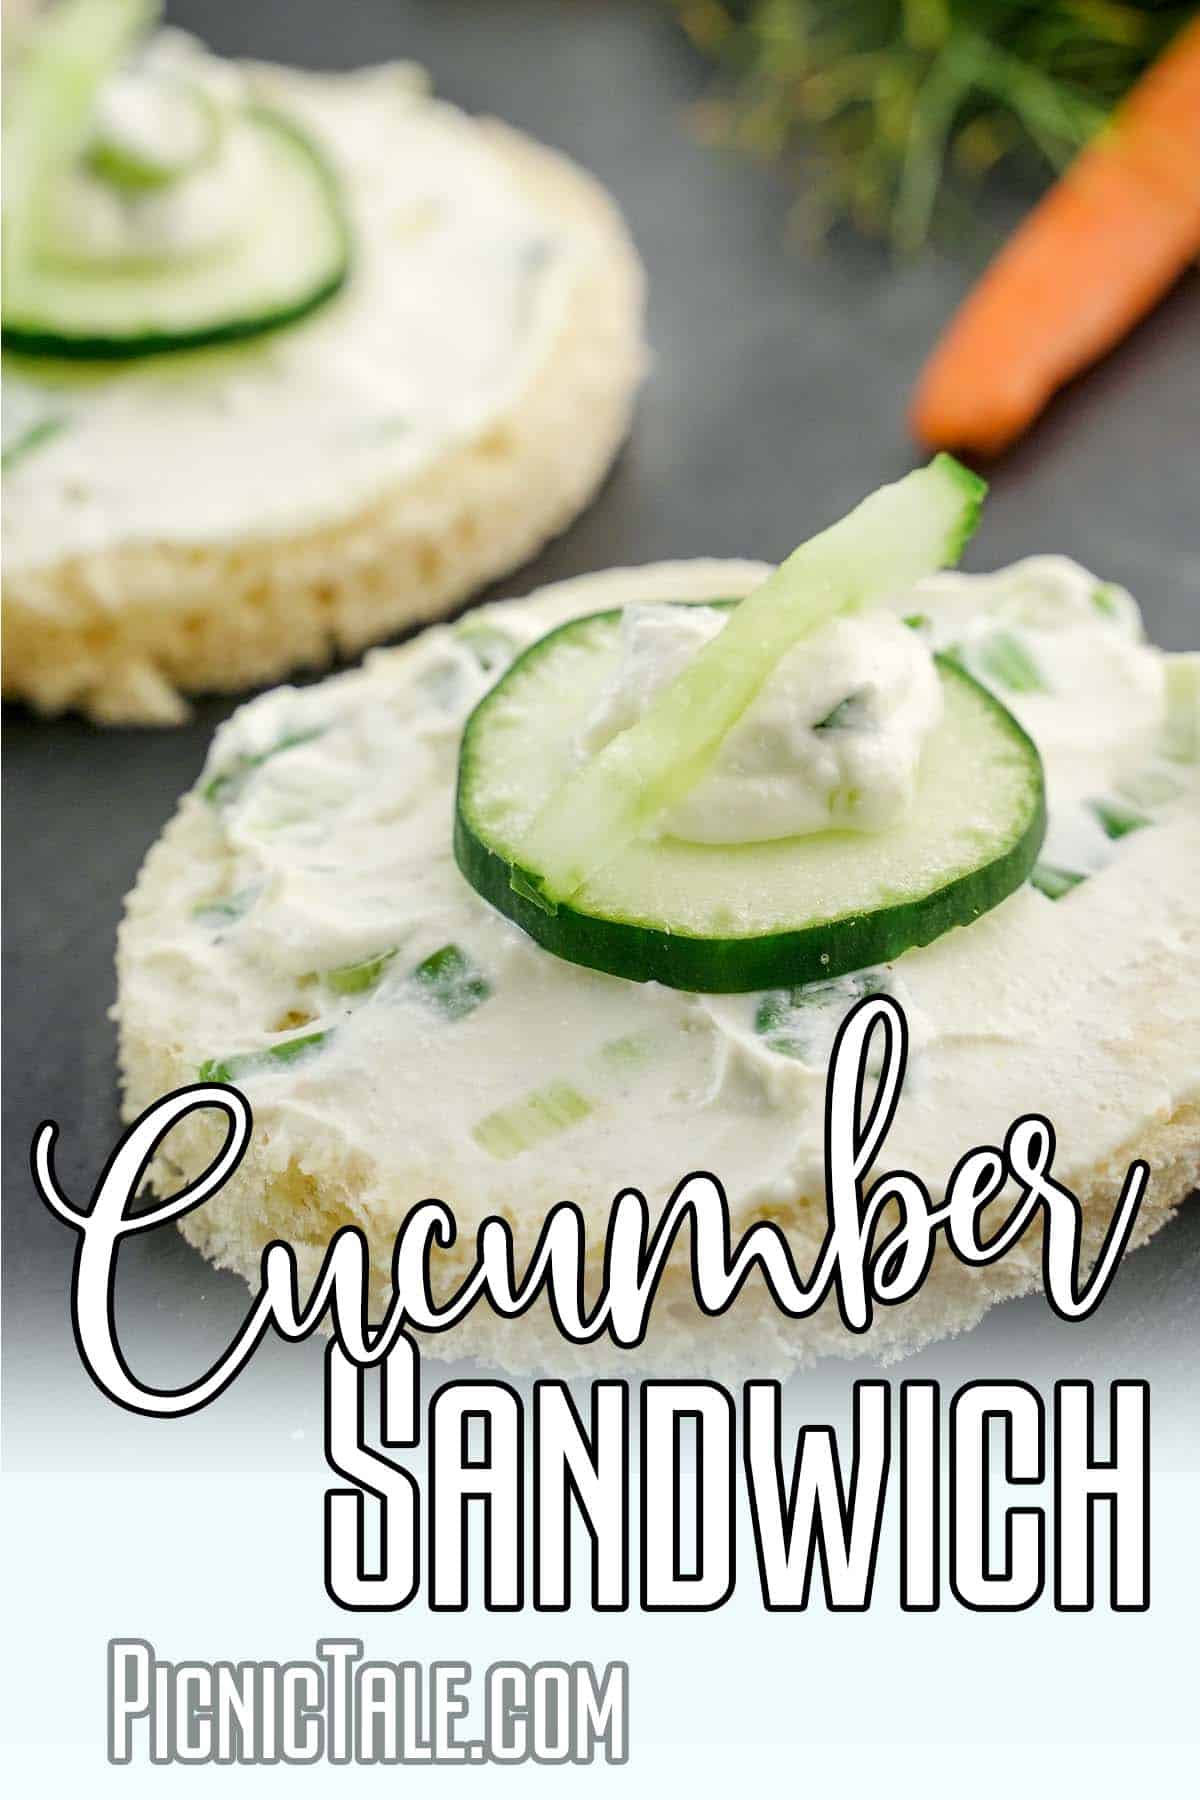 Cucumber Sandwiches, wording on bottom.